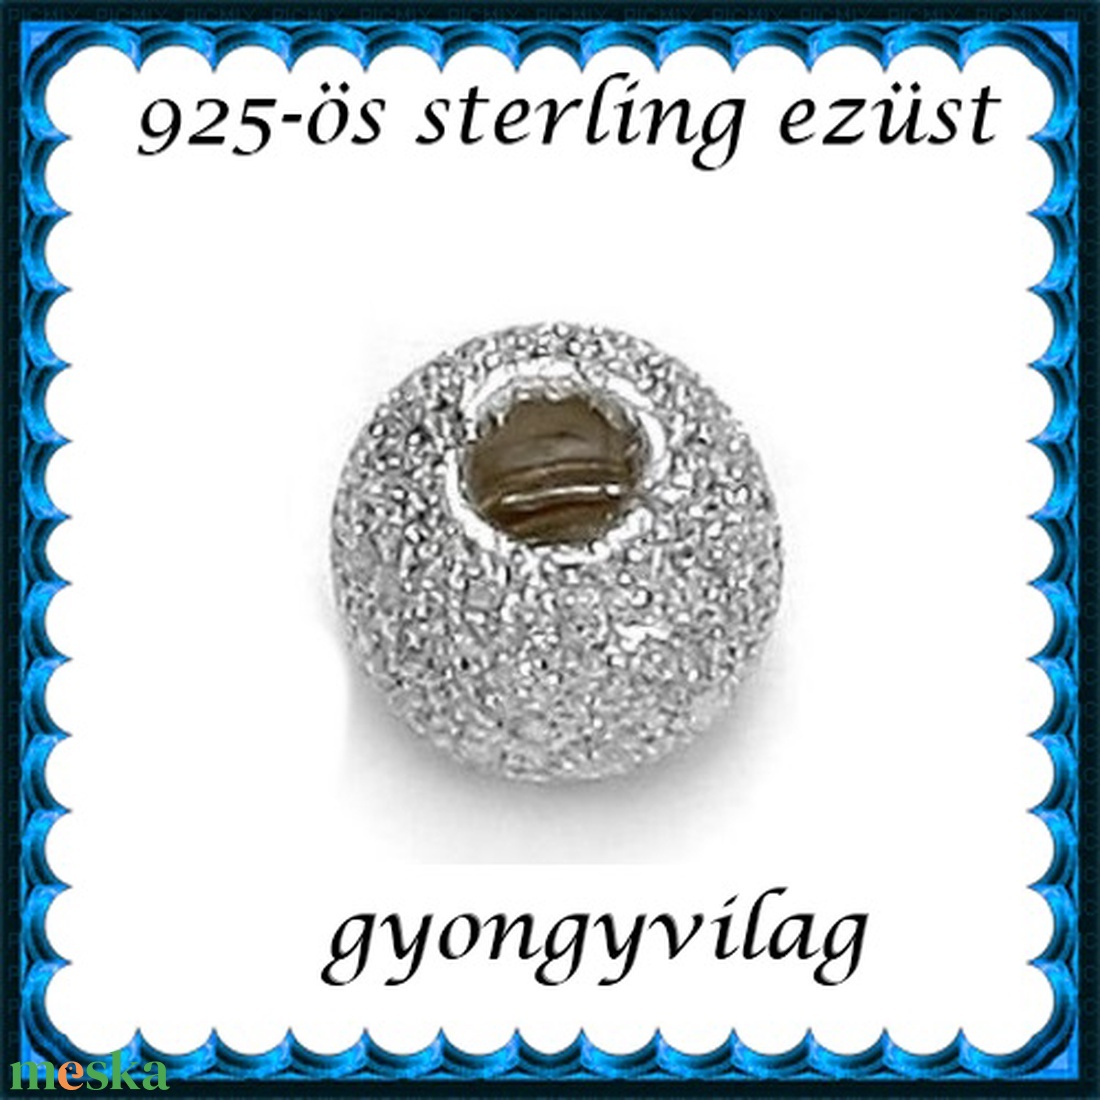 925-ös sterling ezüst ékszerkellék: köztes/gyöngy/díszitőelem  EKÖ 34 5mm 2db/csomag - gyöngy, ékszerkellék - fém köztesek - Meska.hu